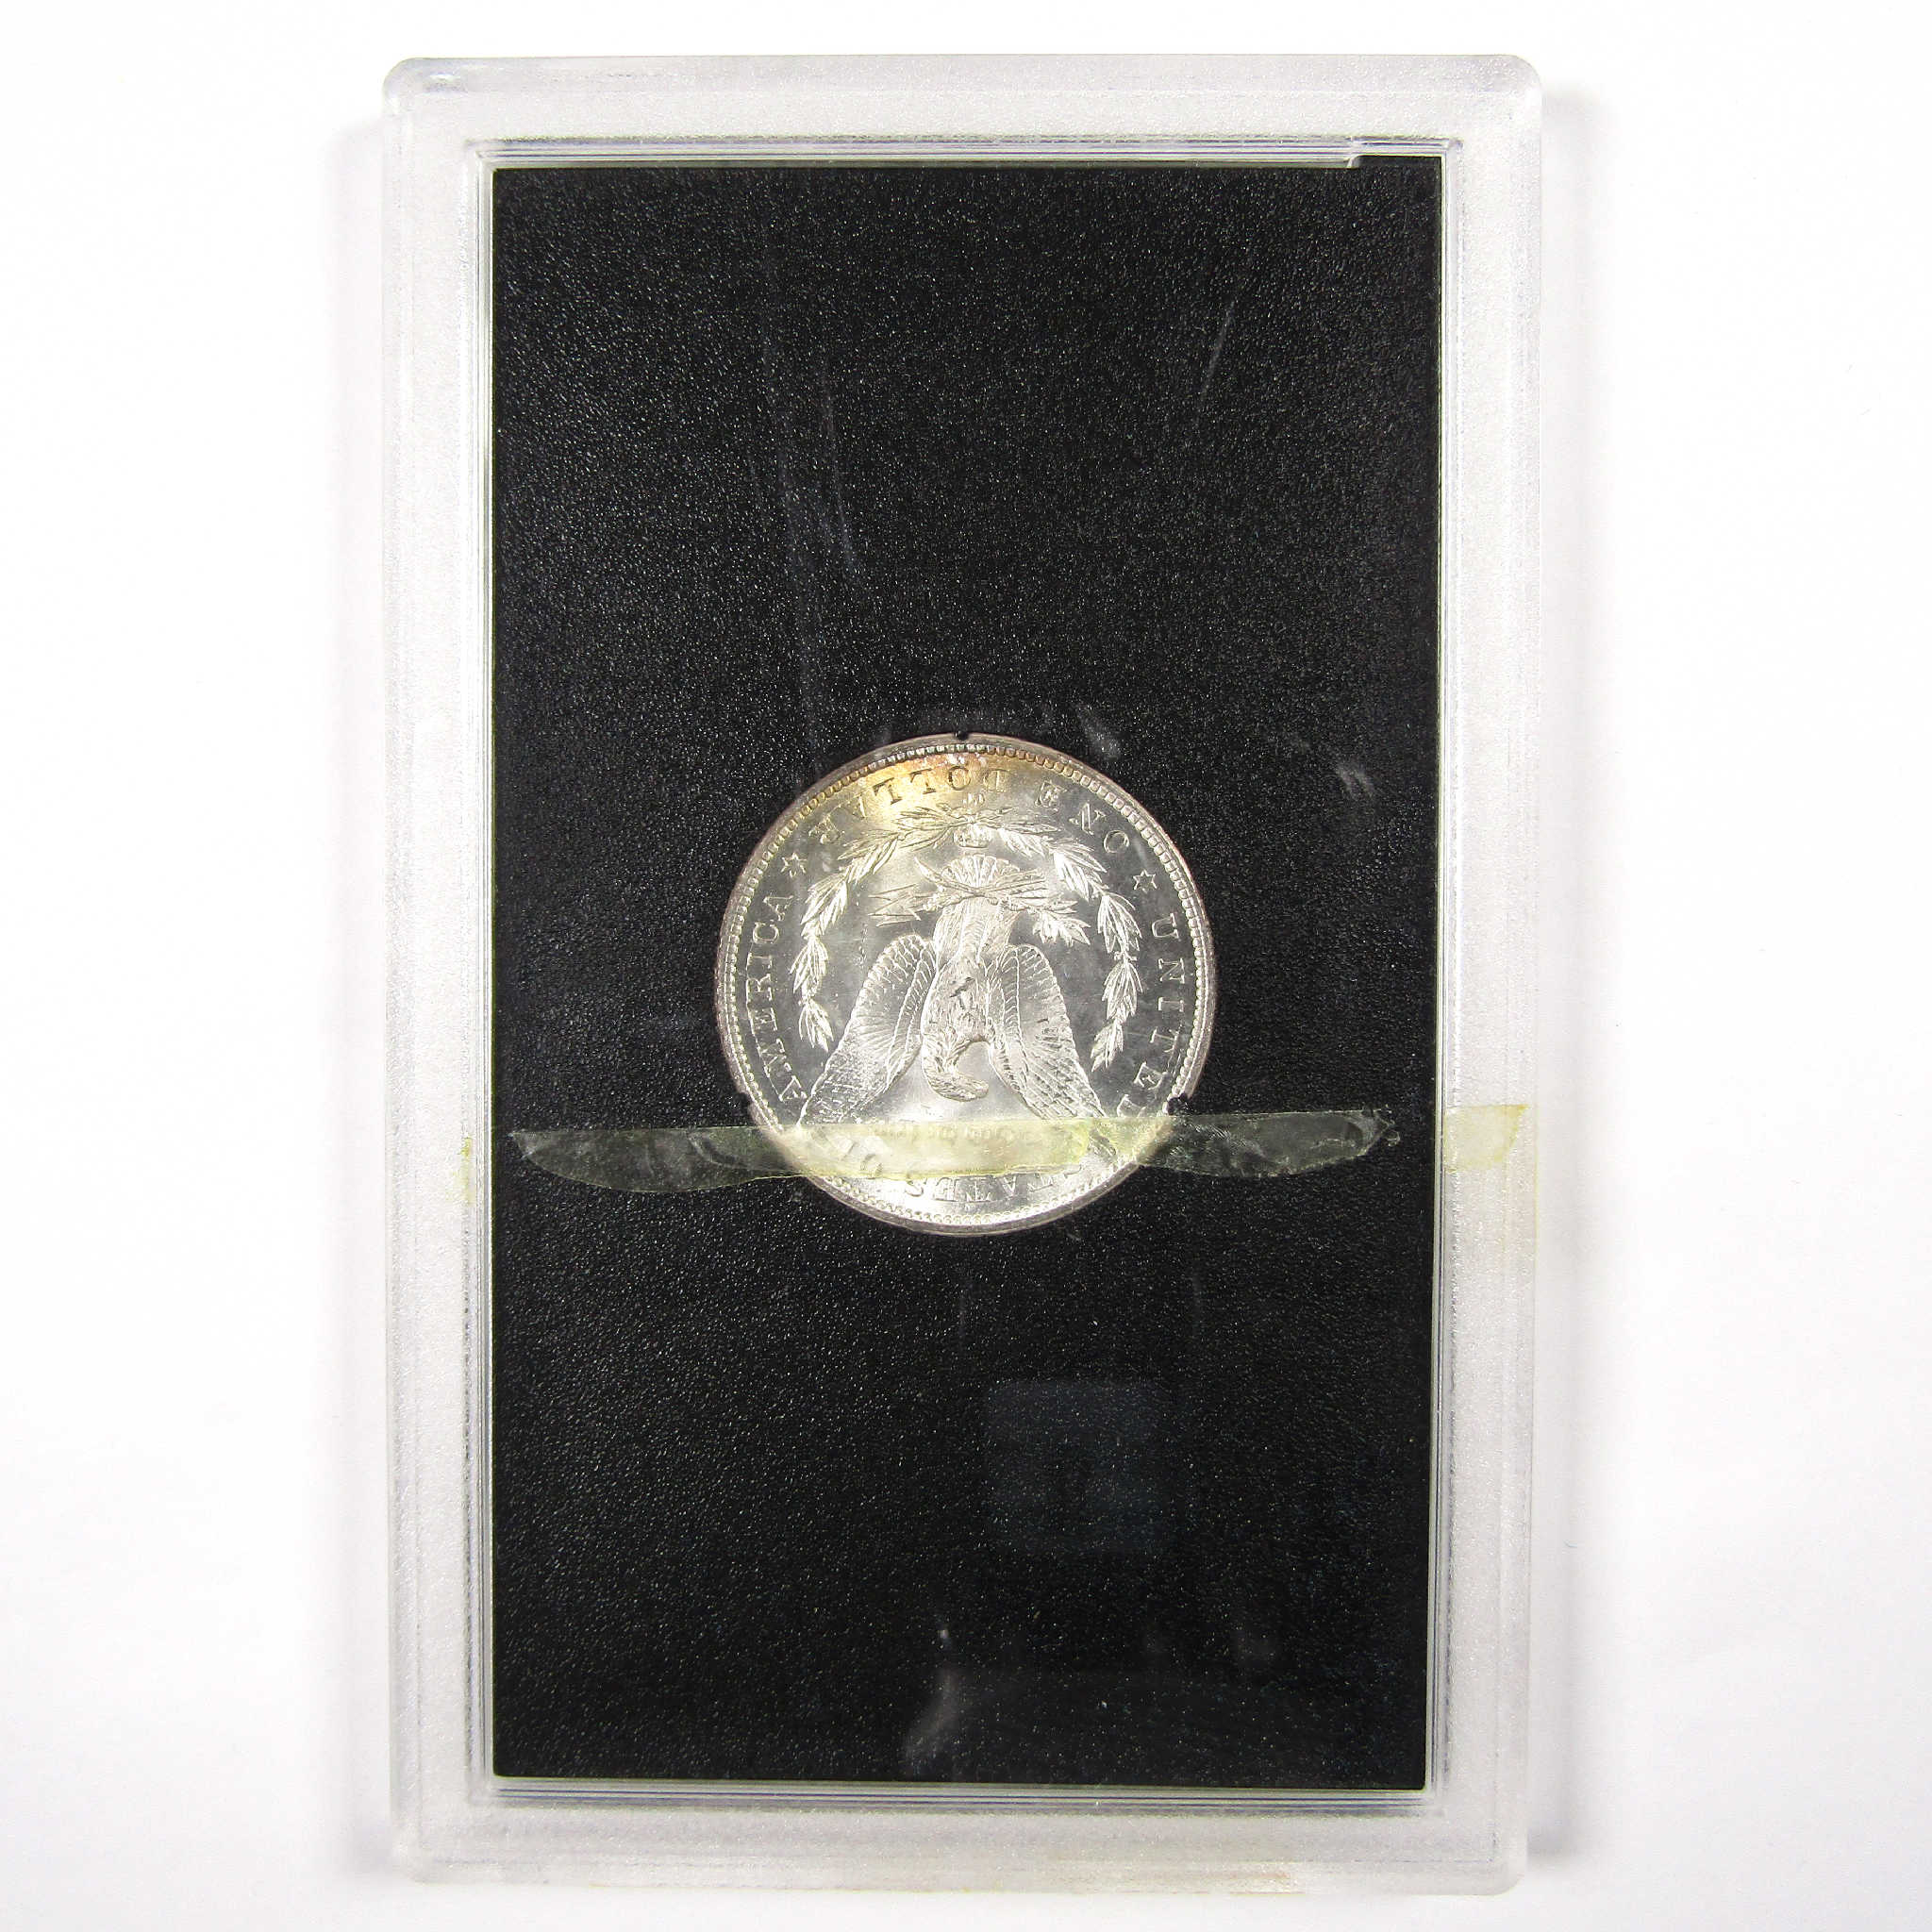 1883 CC GSA Morgan Dollar BU Uncirculated Silver $1 Coin SKU:I11498 - Morgan coin - Morgan silver dollar - Morgan silver dollar for sale - Profile Coins &amp; Collectibles